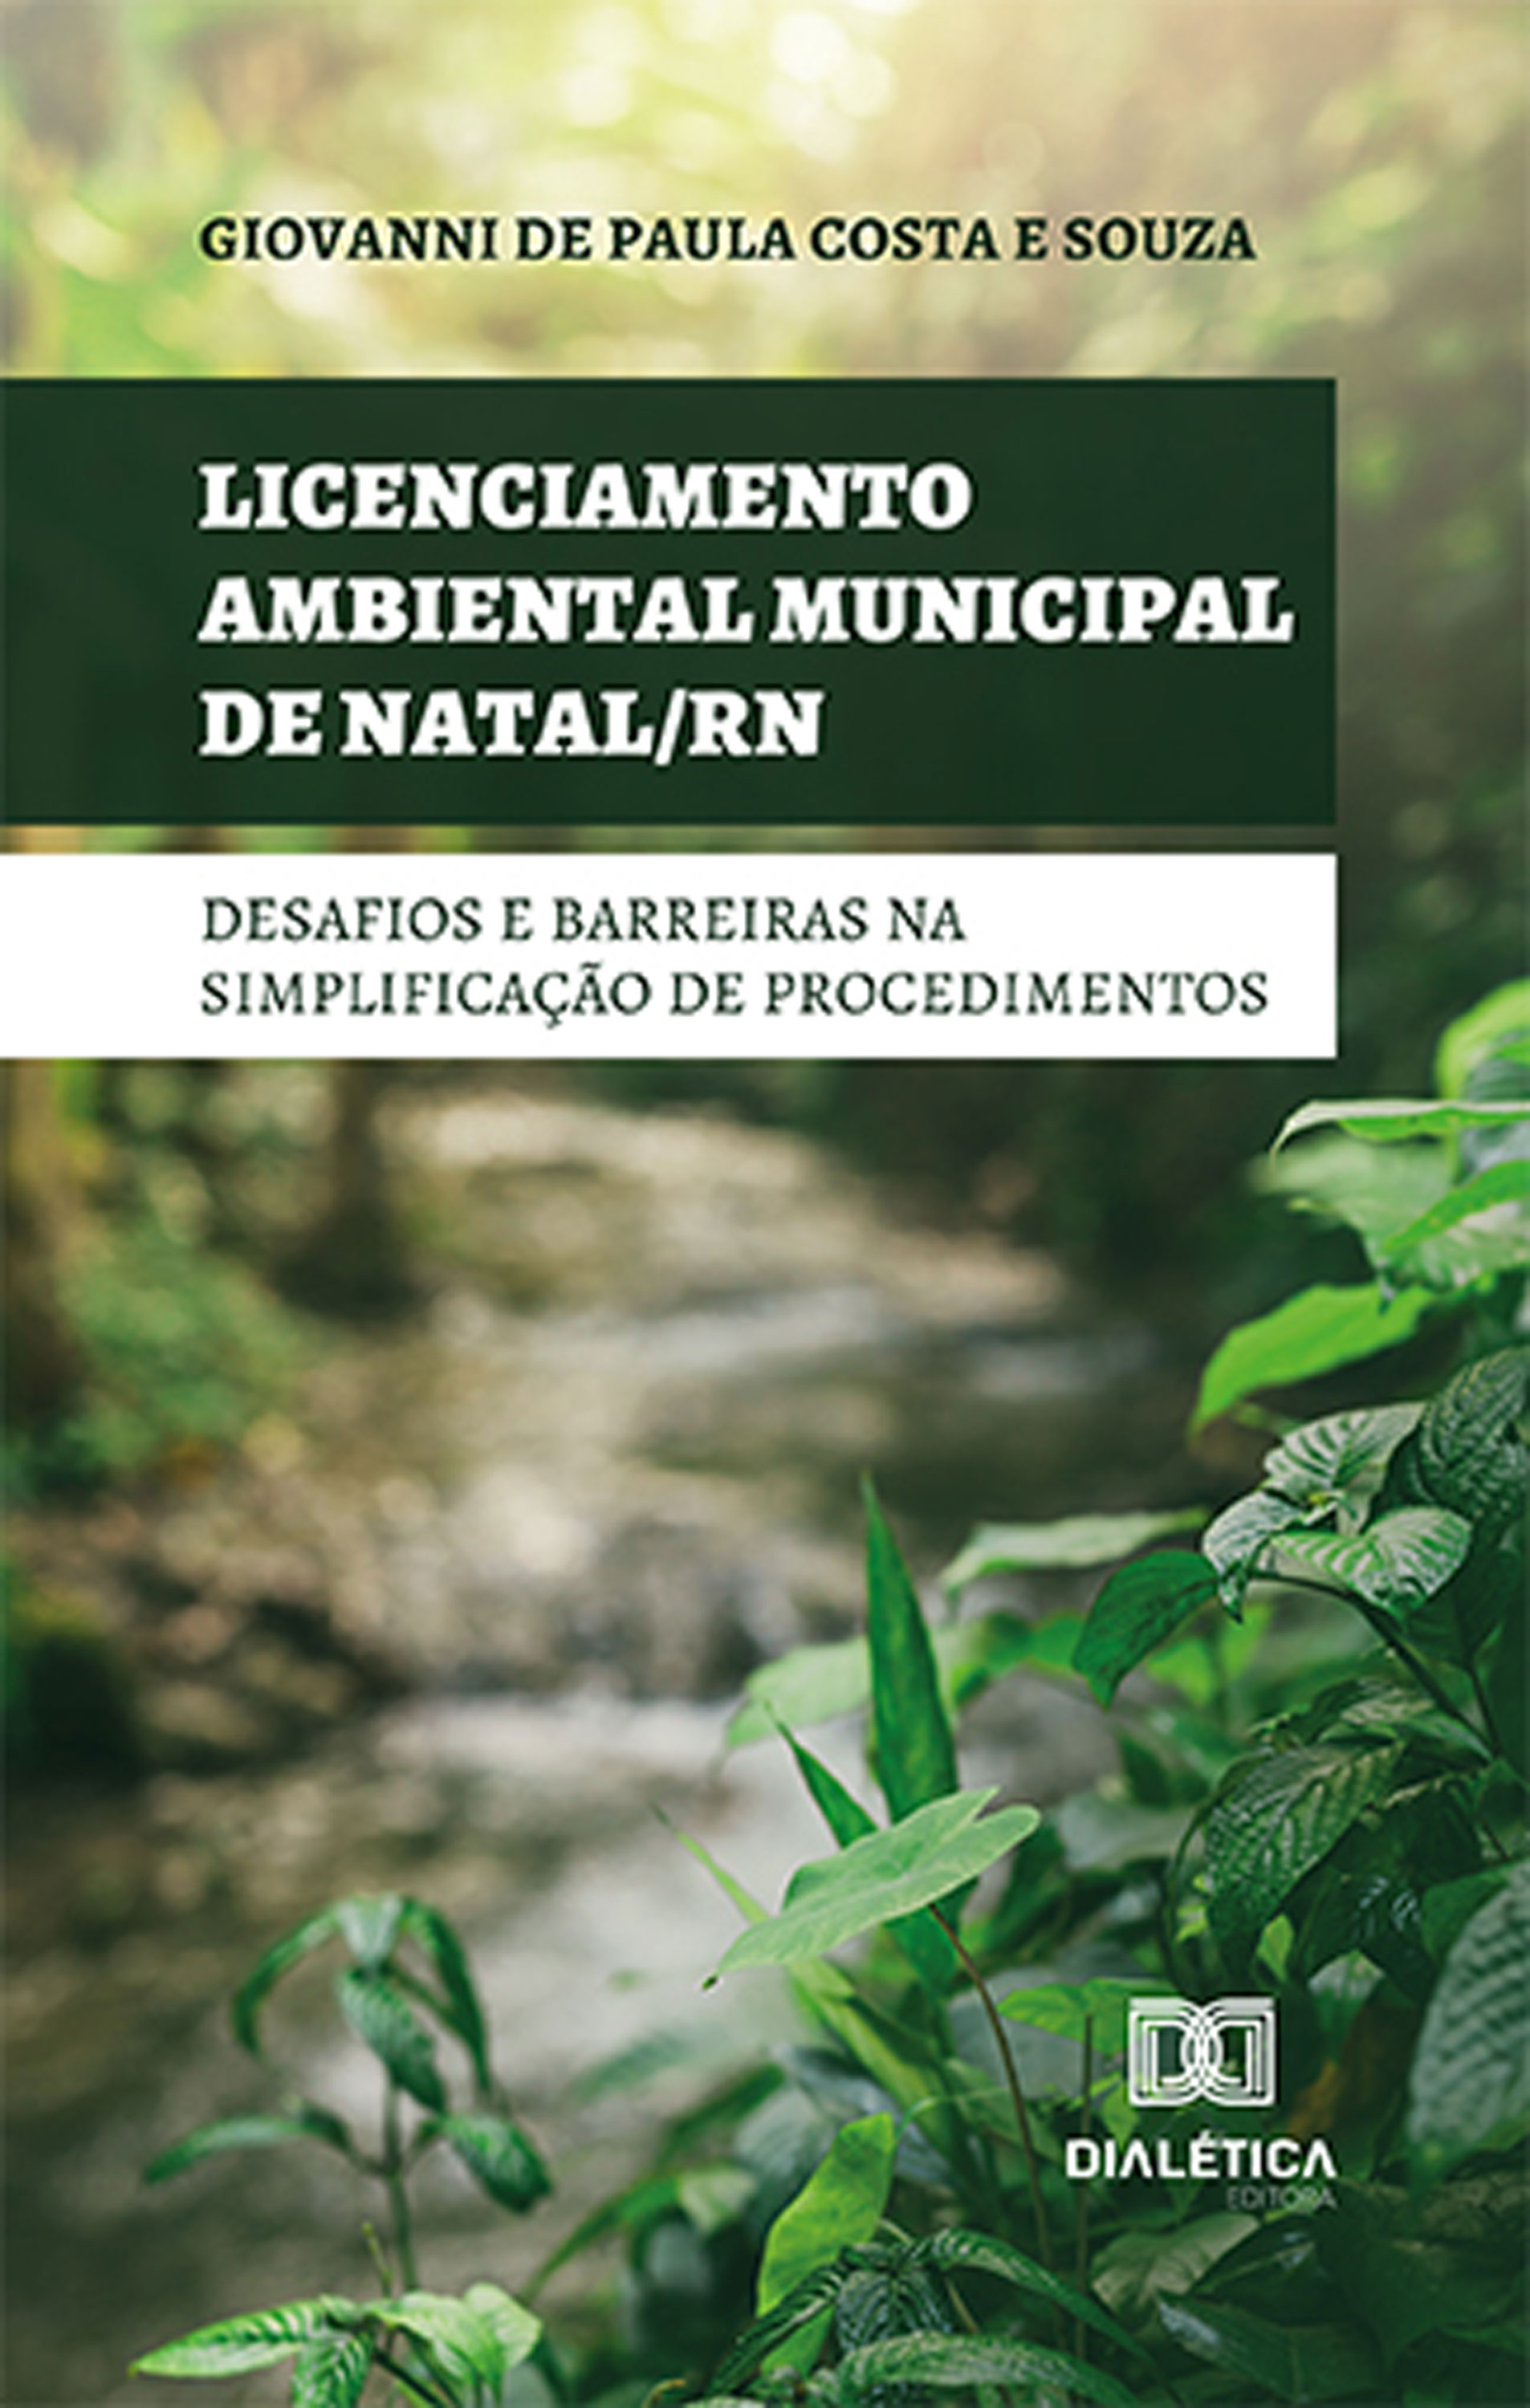 Licenciamento ambiental municipal de Natal/RN